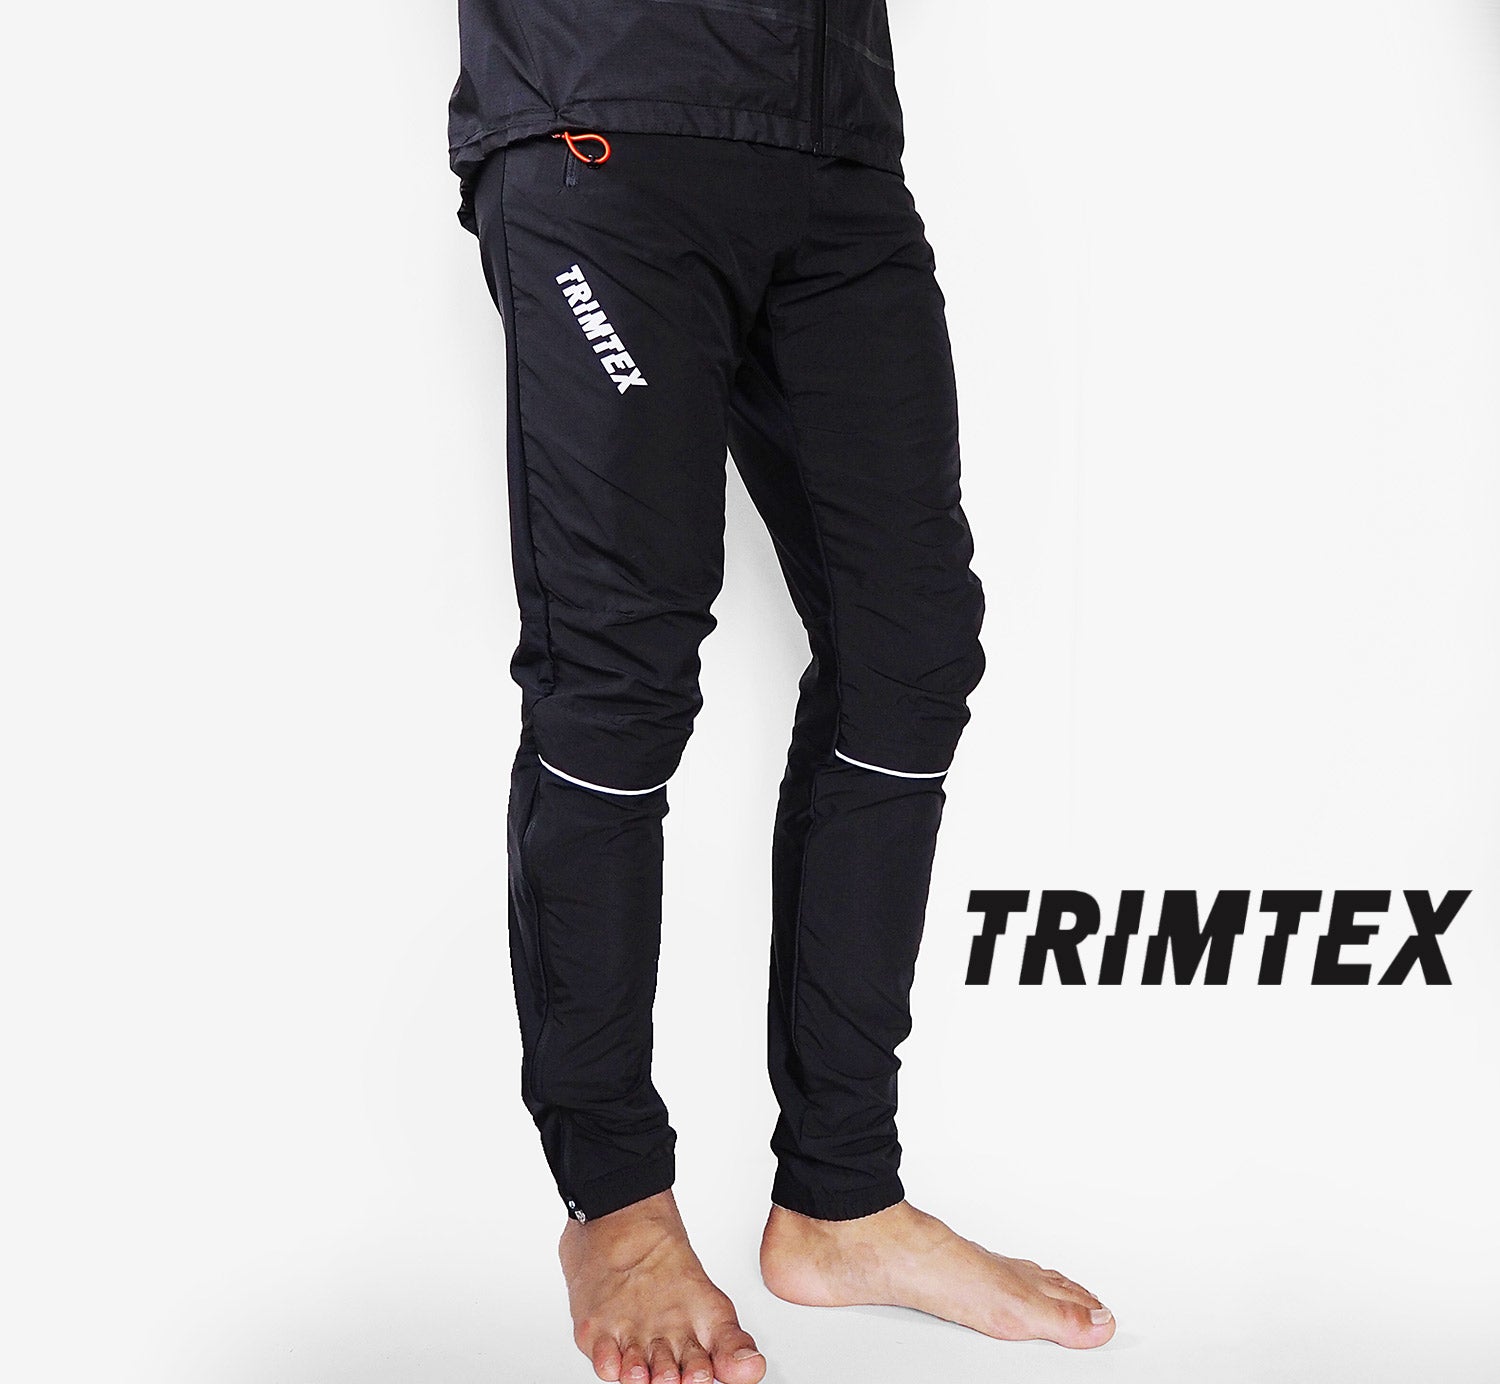 TRIMTEX Trainer TX Pants / トリムテックス トレイナー TX パンツ